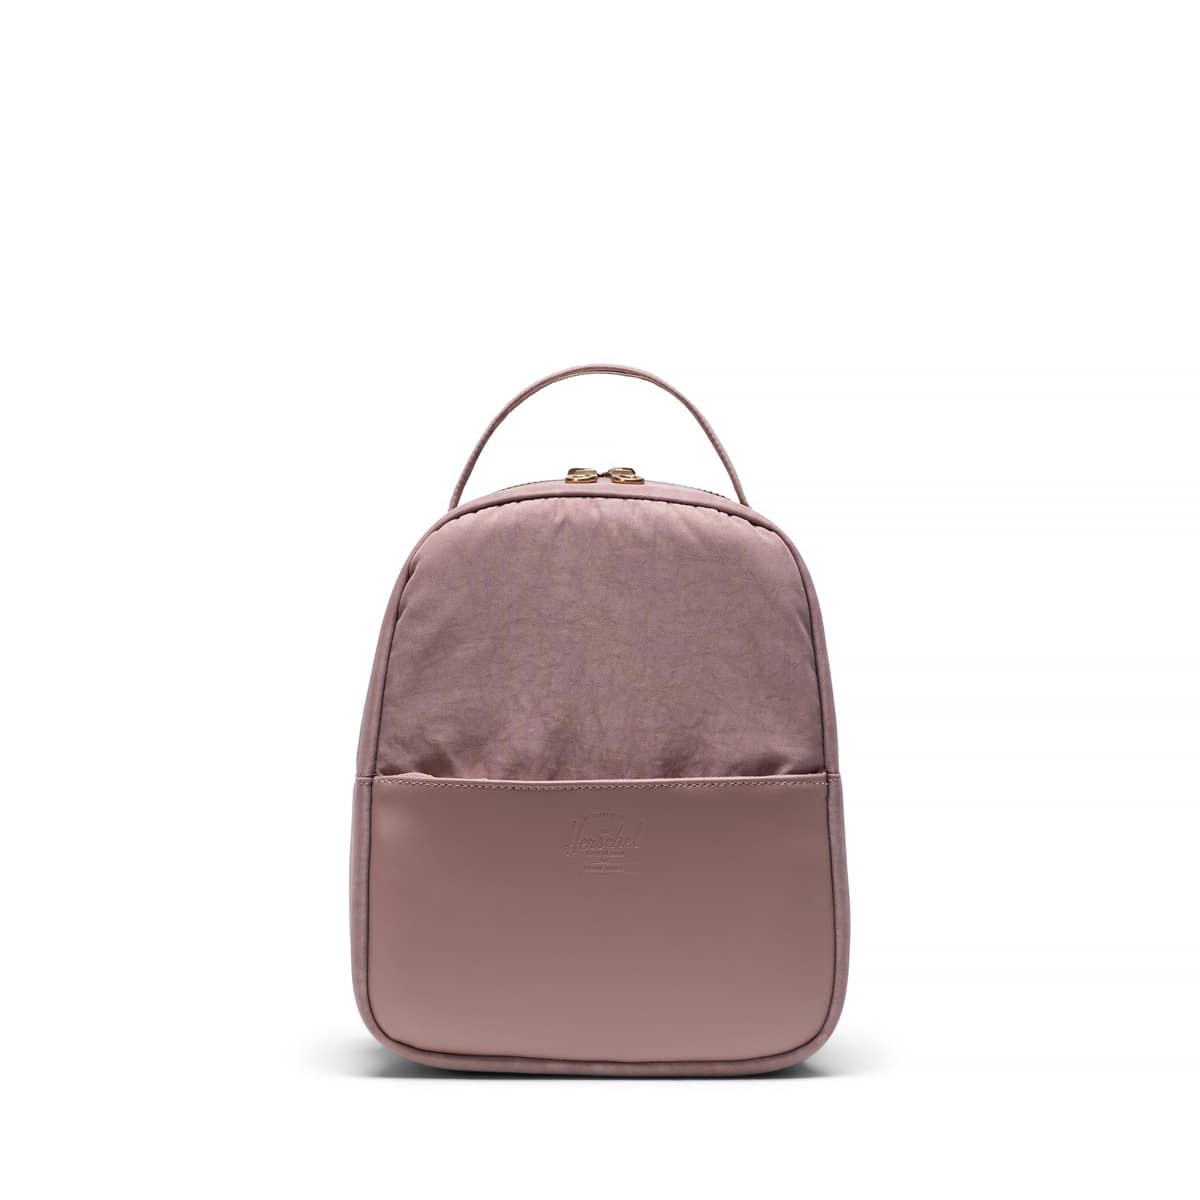 Best Mini Backpack for Women